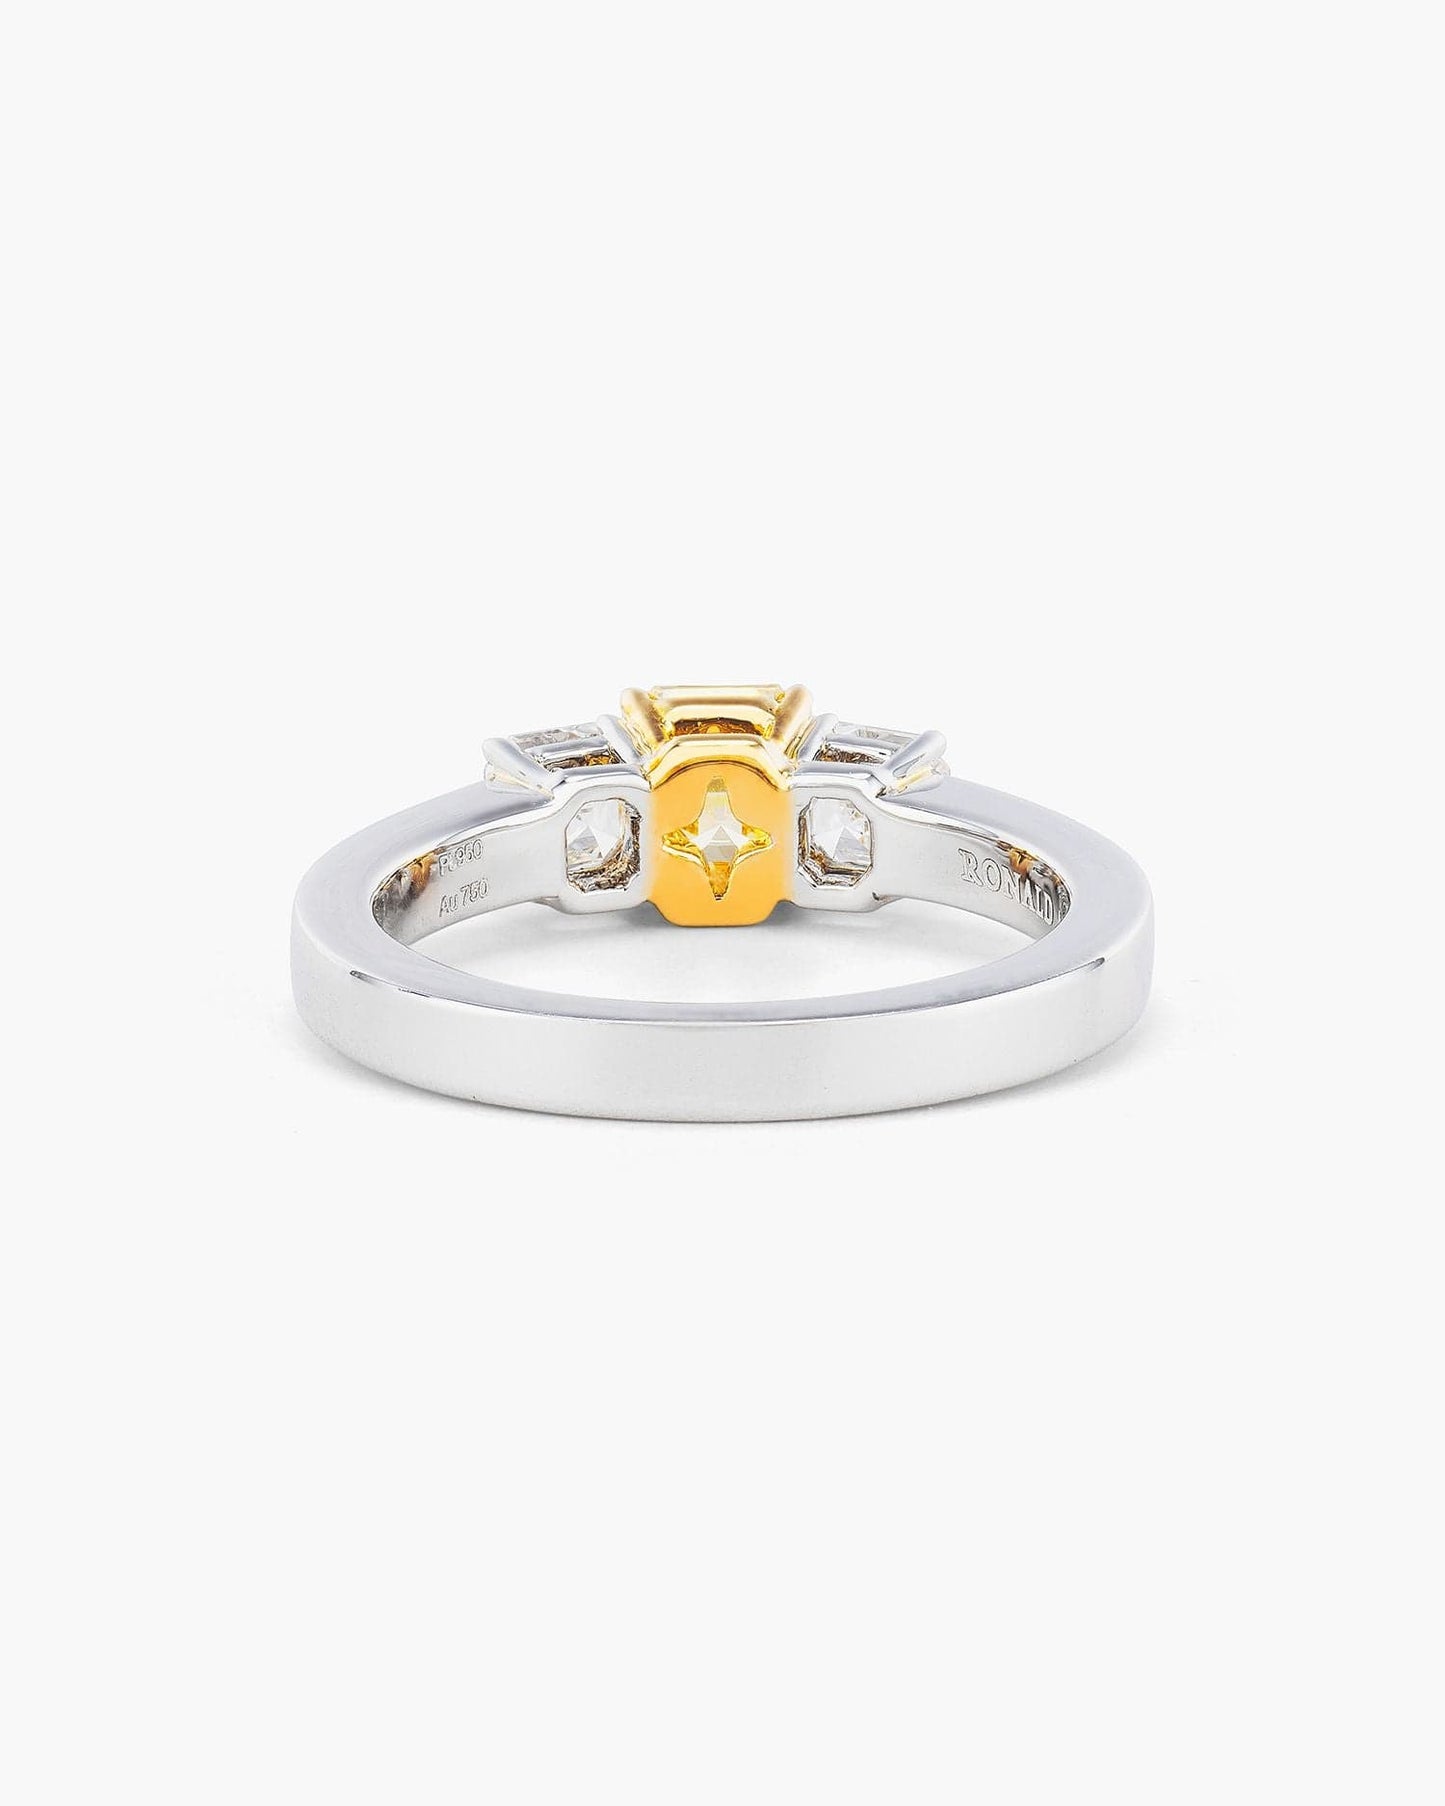 0.74 carat Asscher Cut Yellow and White Diamond Ring